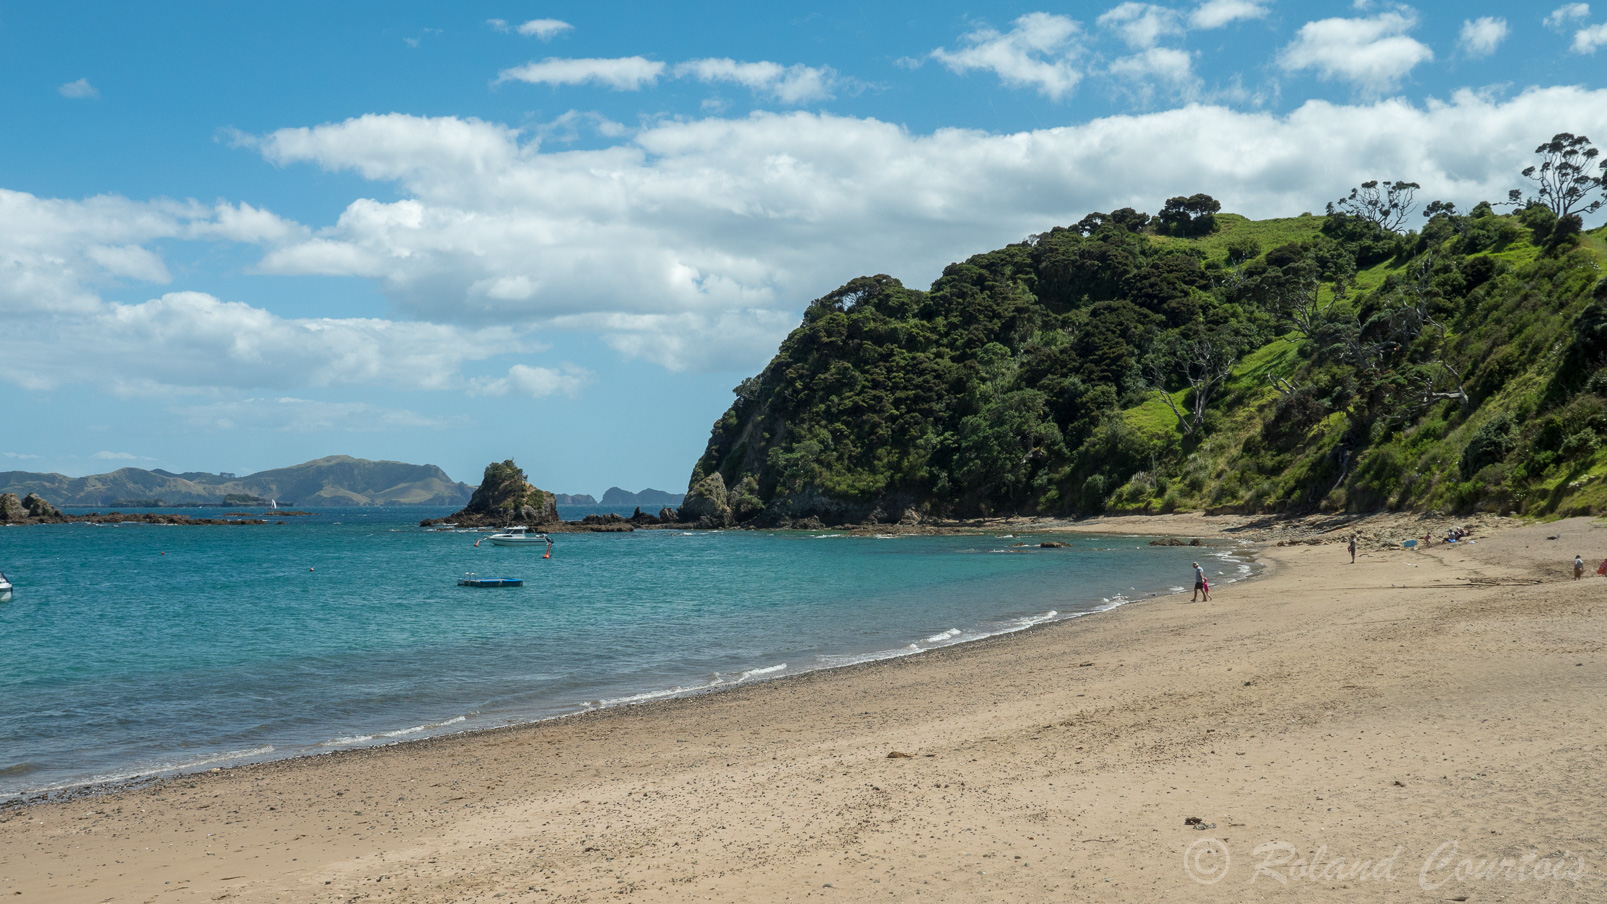 Des eaux scintillantes, des plages de sable fin et une nature sauvage viennent parfaire cette authentique carte postale néo-zélandaise.